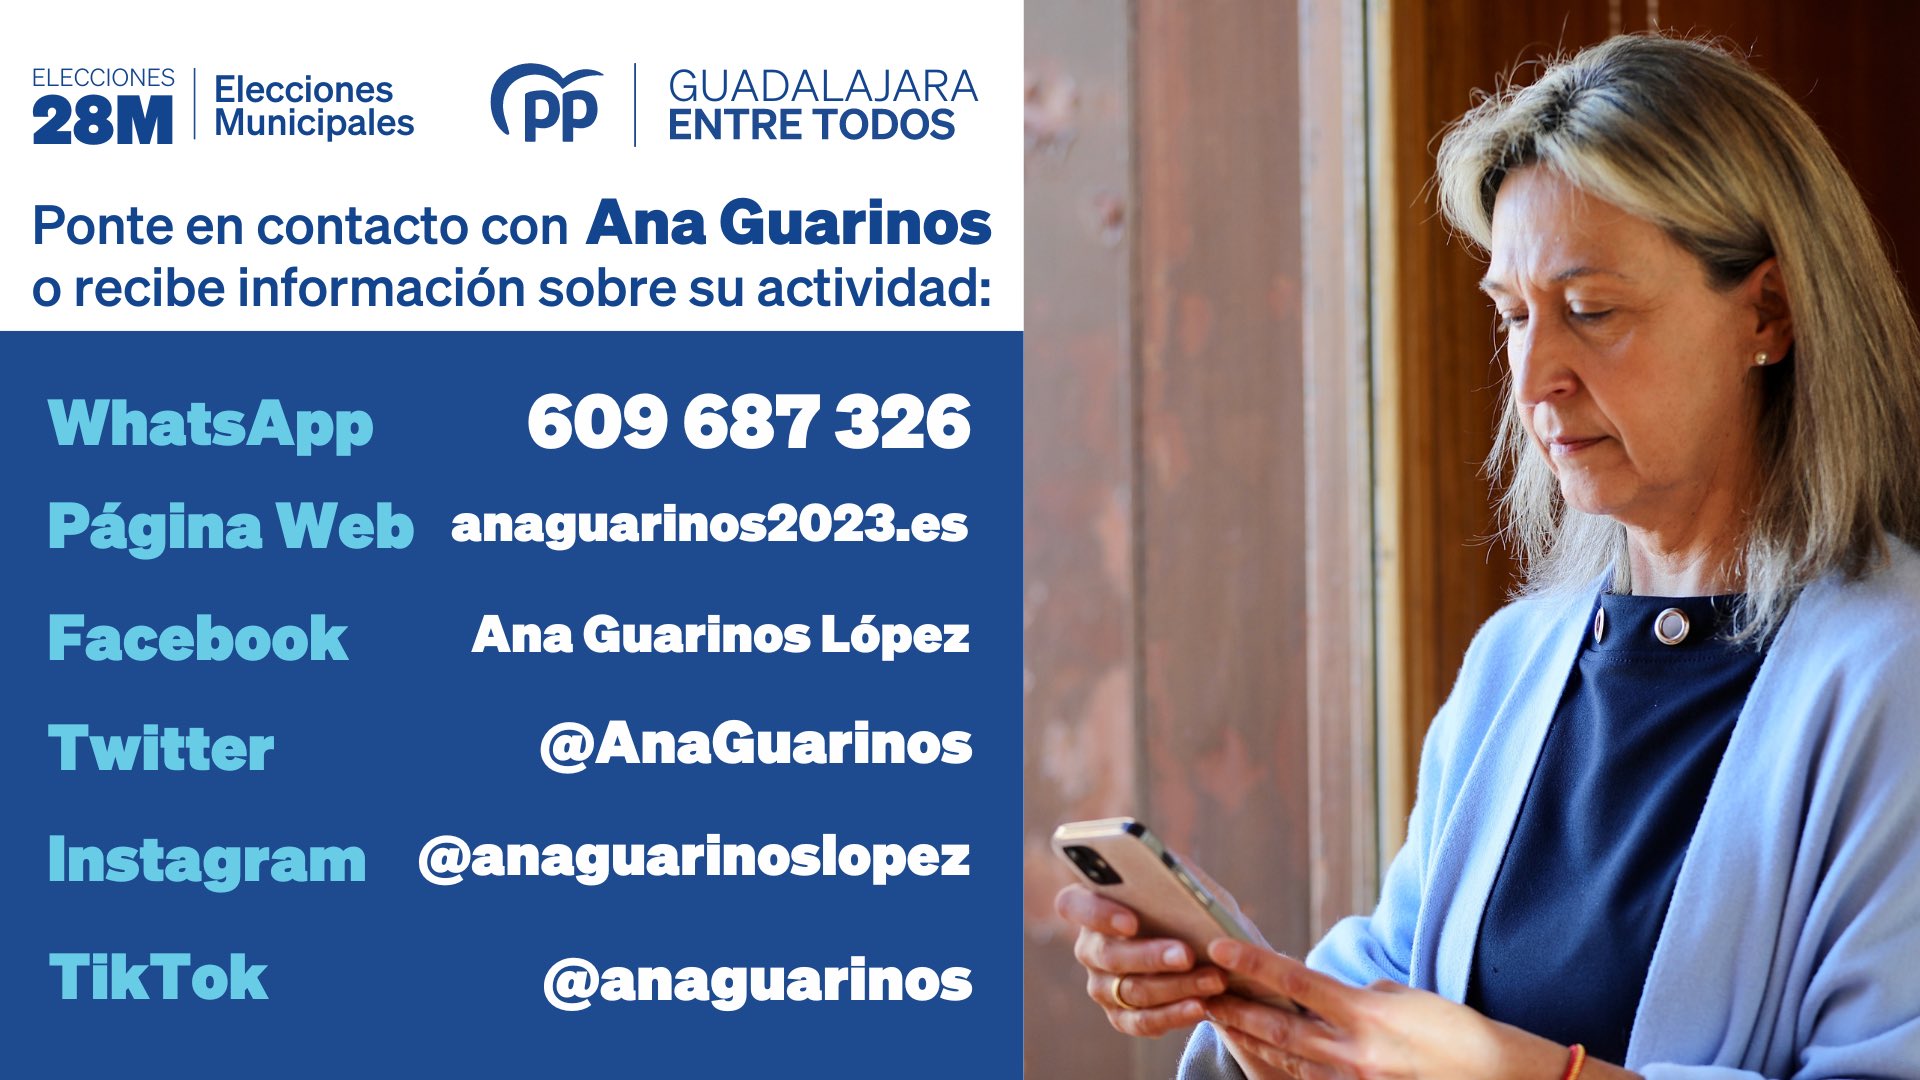 La candidata del PP en Guadalajara lanza su campaña en TikTok y otras redes sociales